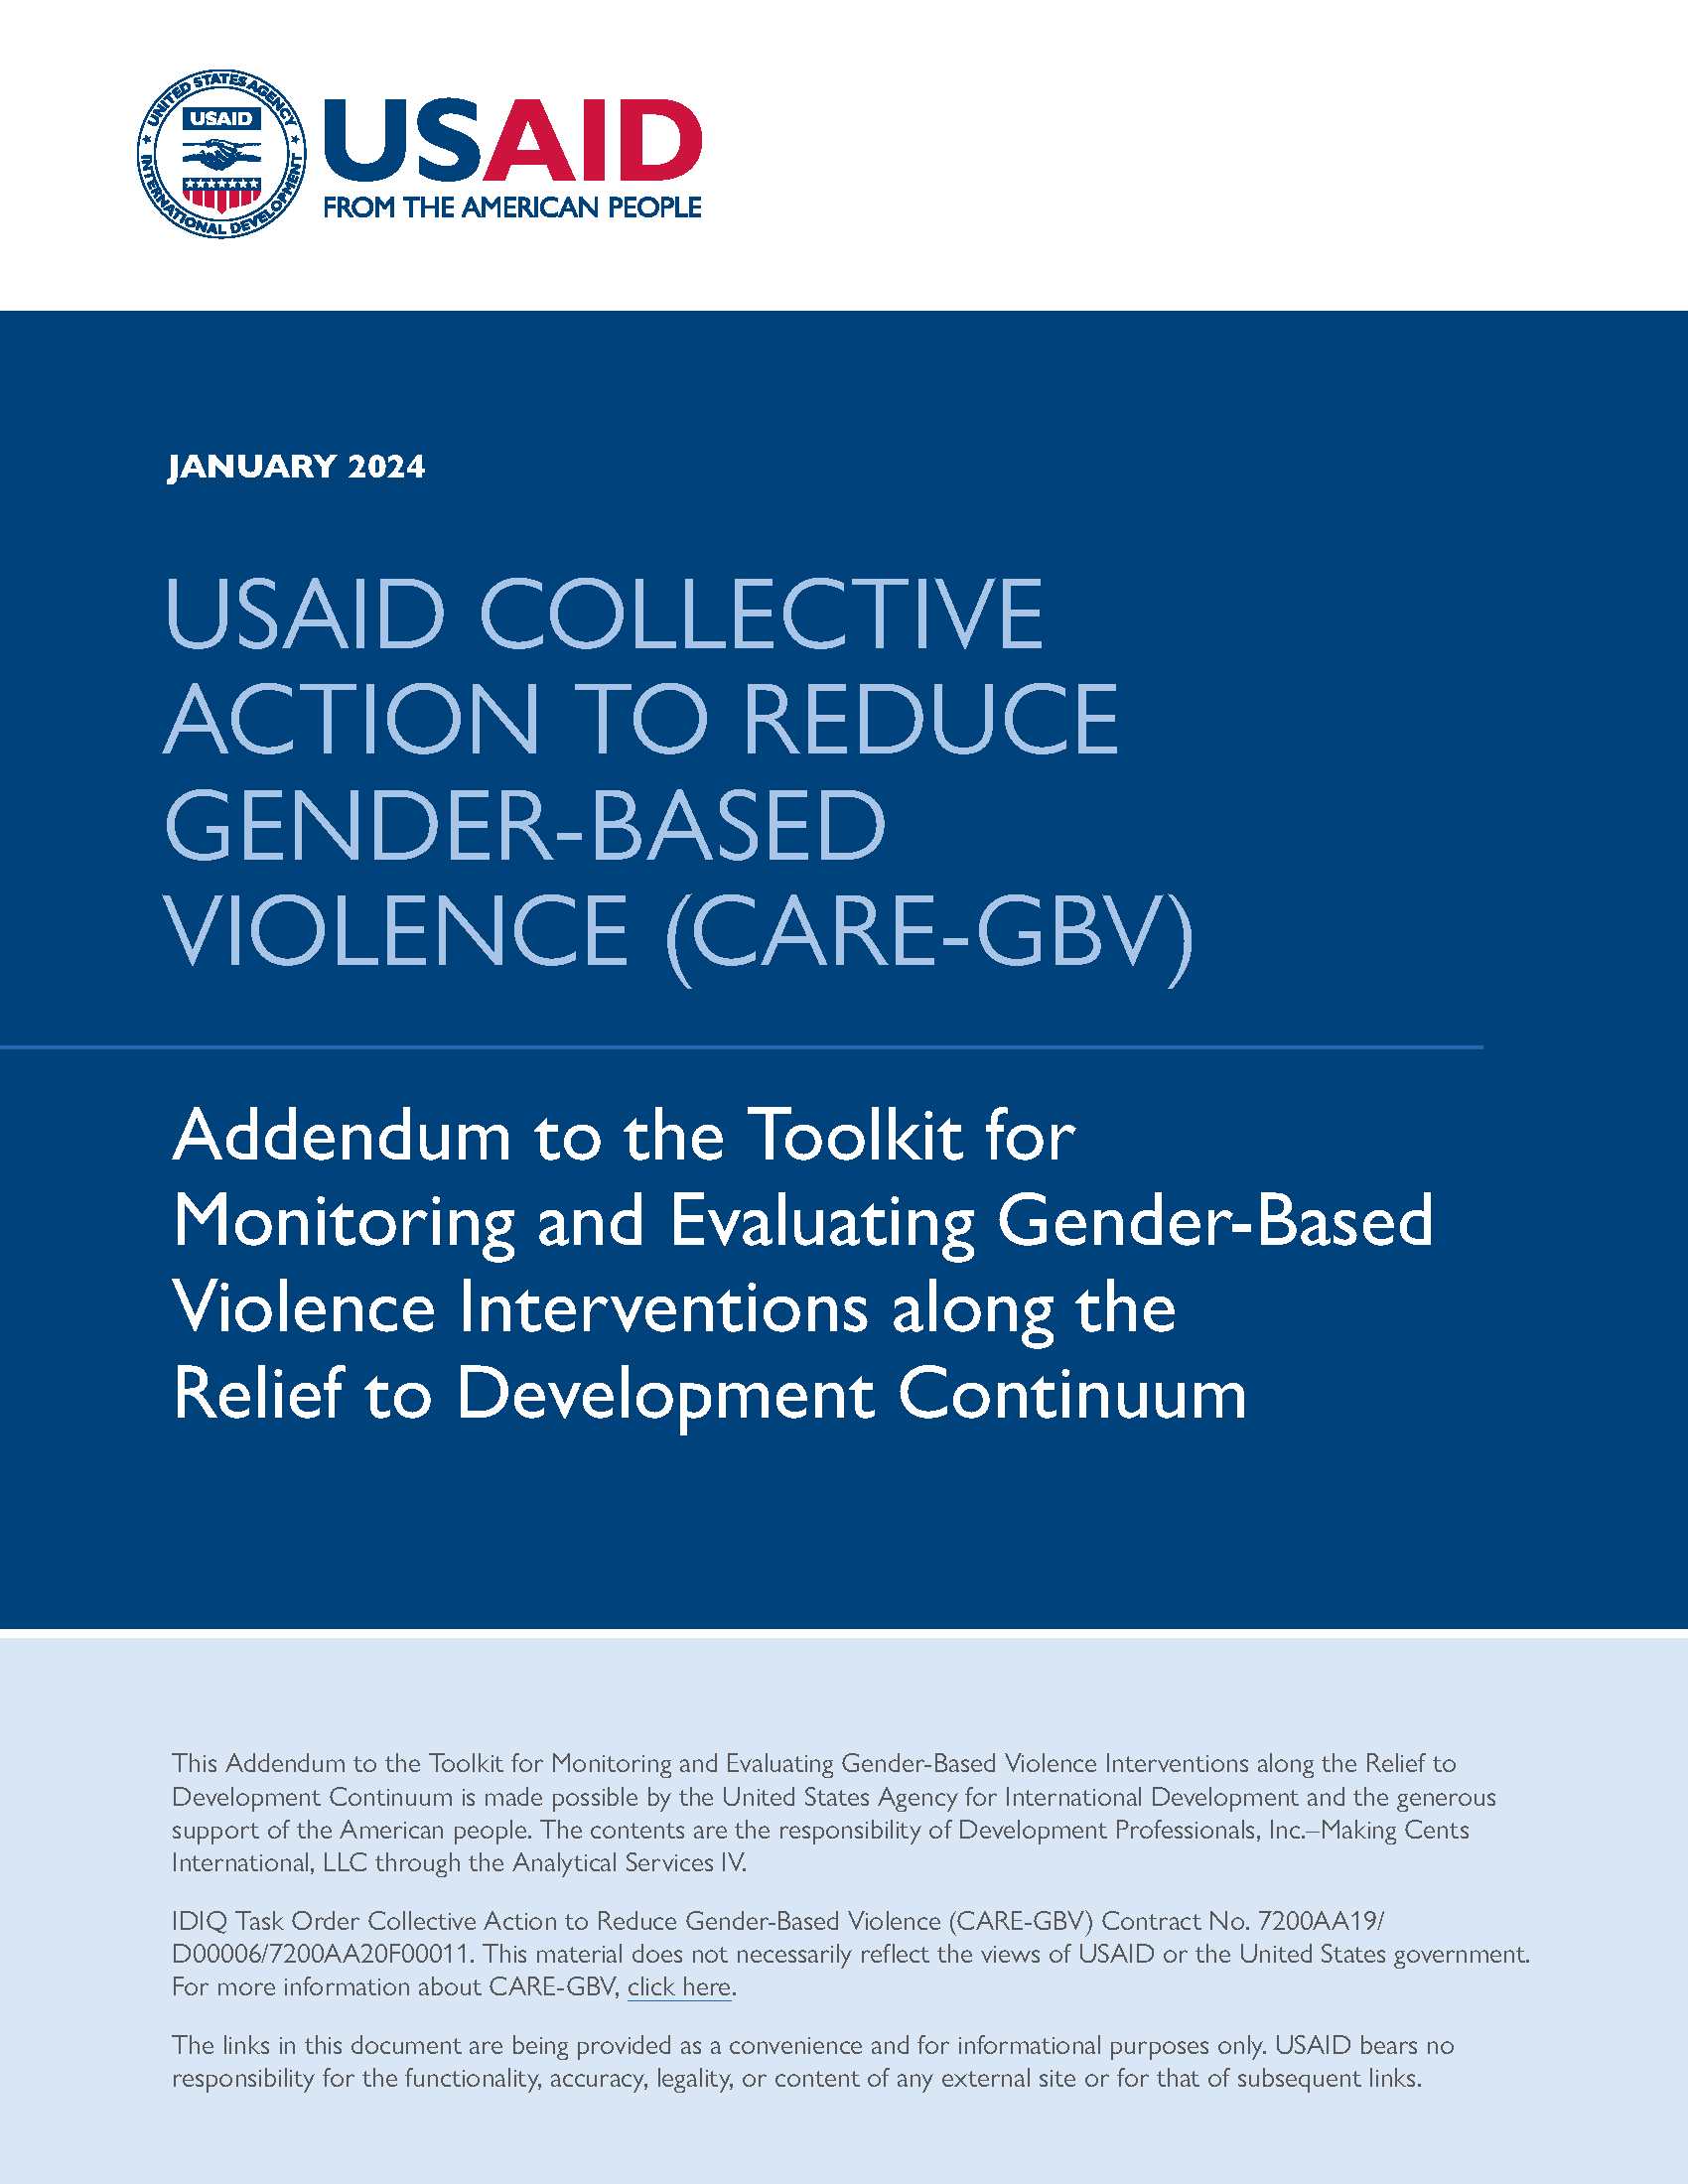 Page de couverture de l'Addendum à la Boîte à outils pour le suivi et l'évaluation des interventions contre la violence basée sur le genre tout au long du continuum secours-développement